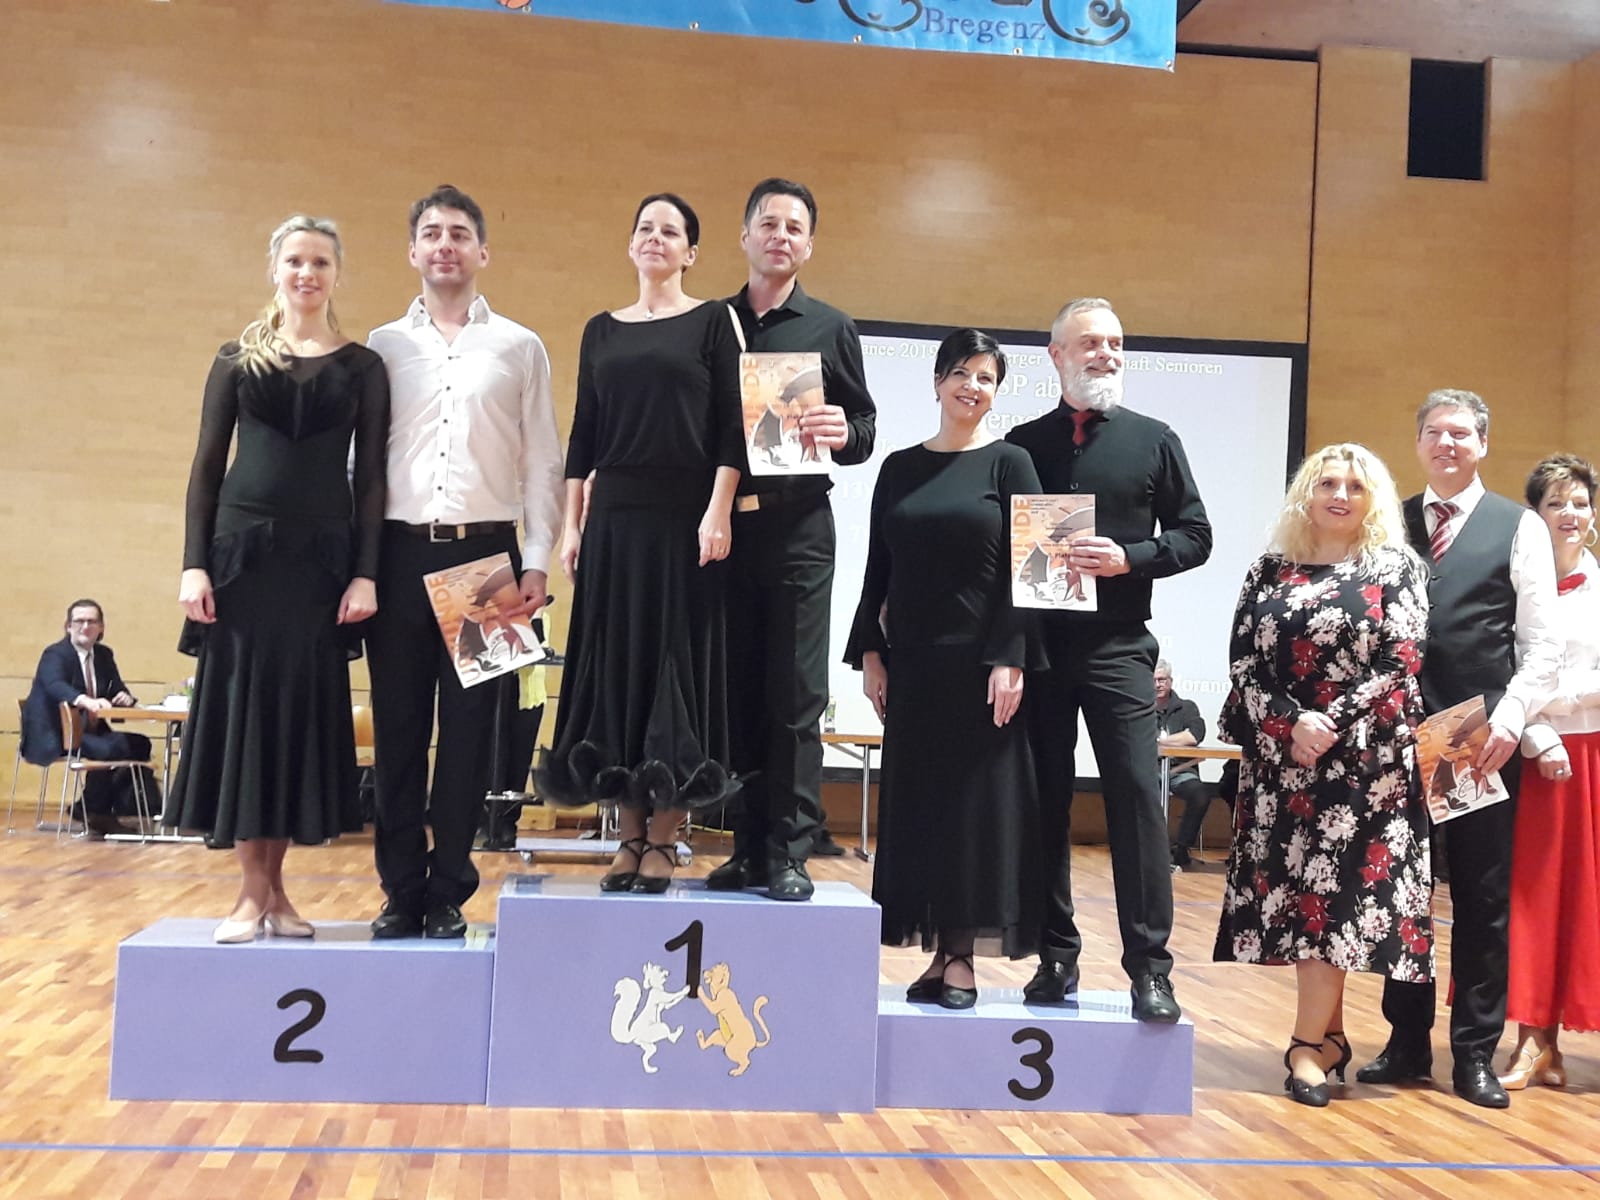 West Dance 2019 - 3. Platz für Elfi und Wilfried Böhler